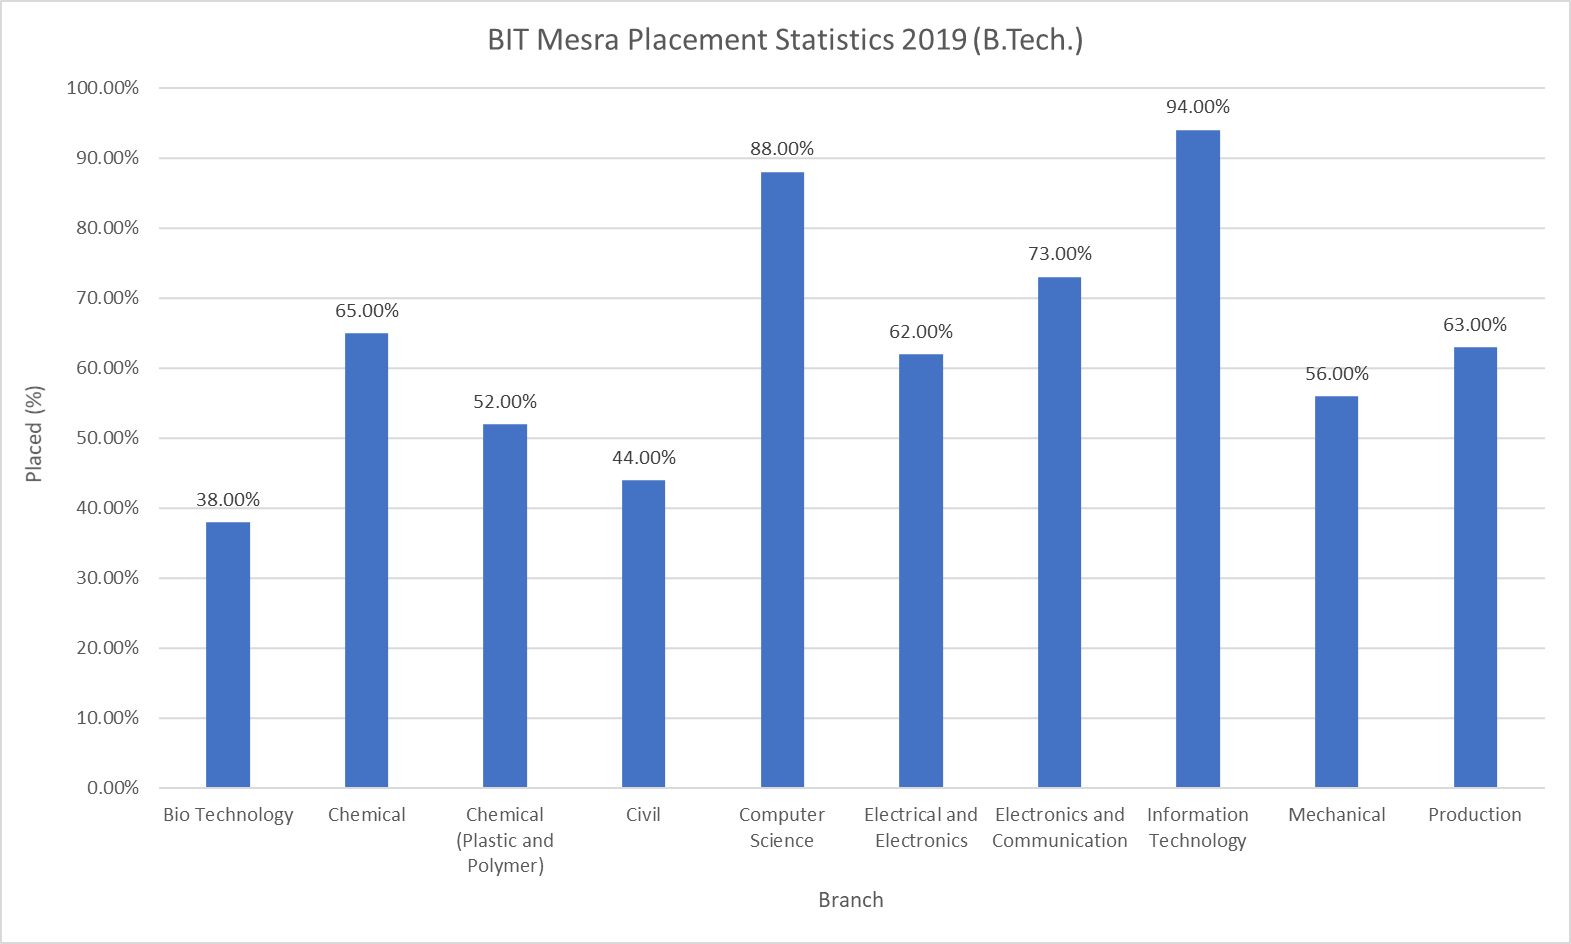 BIT Mesra Placement Statistics 2019 B.Tech